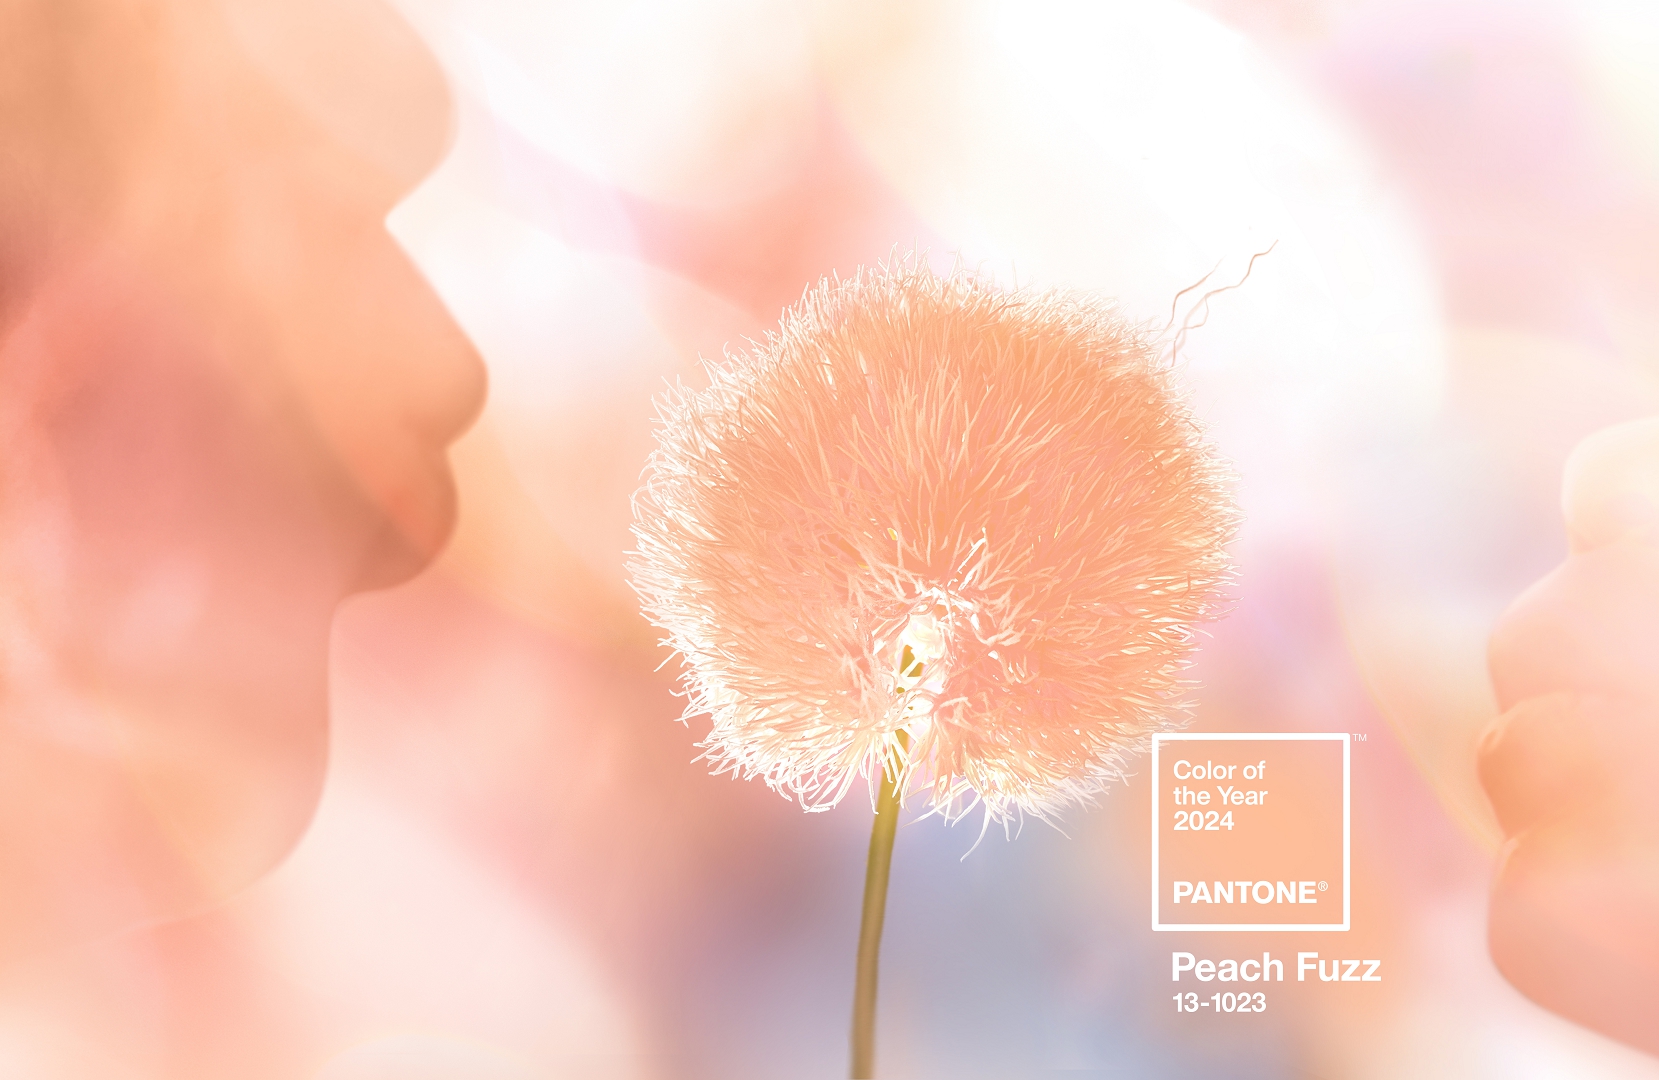 Hrnček PANTONE Peach Fuzz 13-1023 (farba roku 2024)